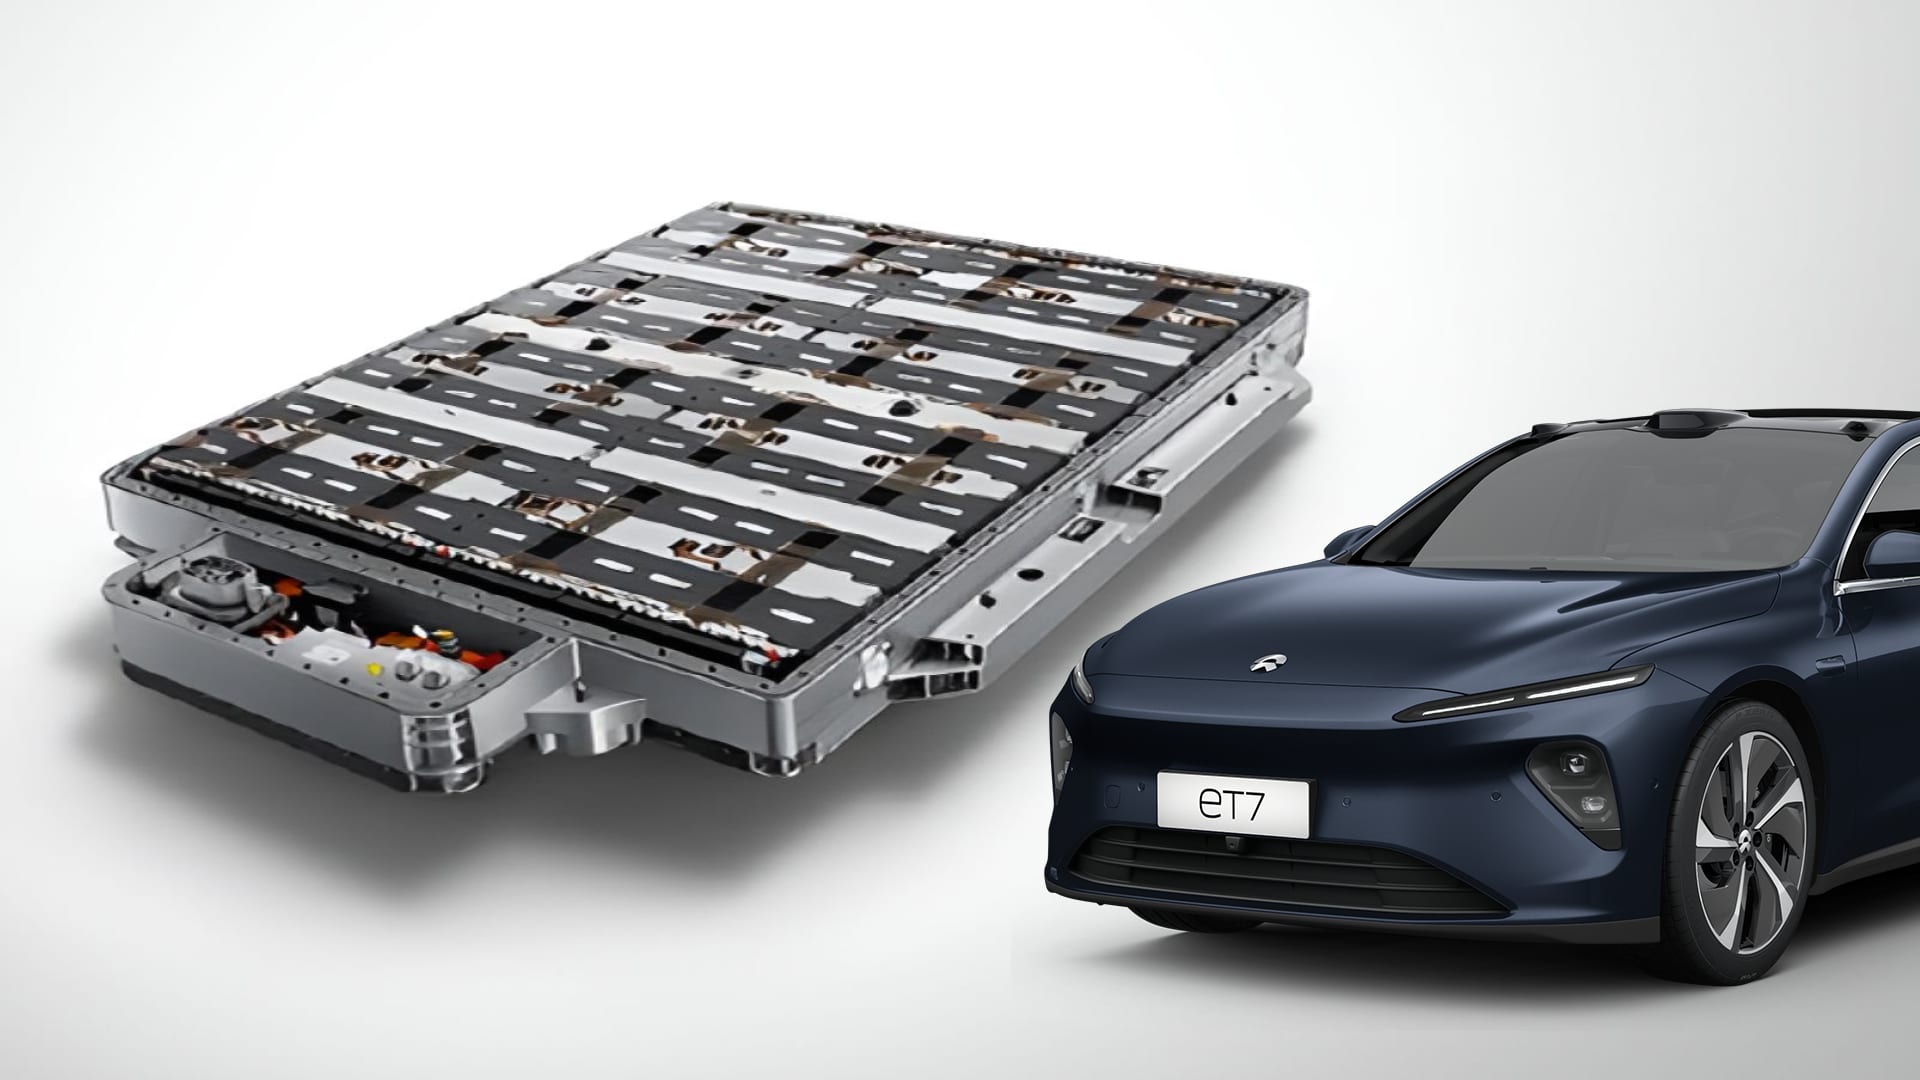 Nio — бренд электромобилей высокого класса, основанный в 2014 году. В настоящее время его автомобили в основном предлагаются с двумя вариантами аккумуляторов: 75 кВтч и 100 кВтч. Клиенты также могут купить автомобиль без аккумулятора, выбрав аккумуля